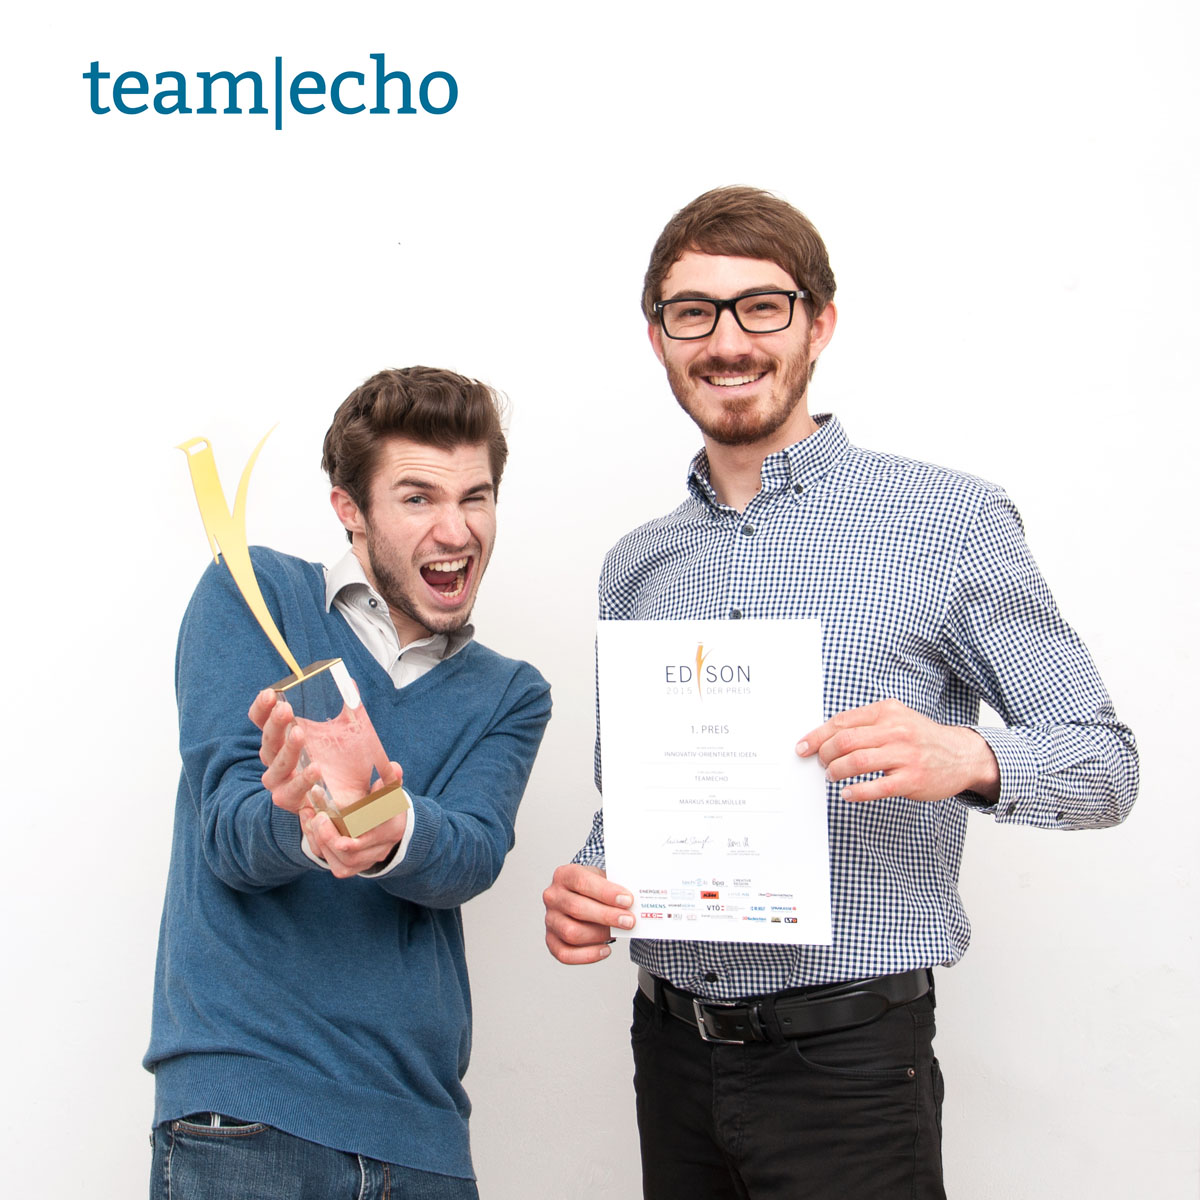  copyright TeamEcho GmbH  l.: TeamEcho-Mitgründer David Schellander, r.: TeamEcho-Mitgründer Markus Koblmüller 